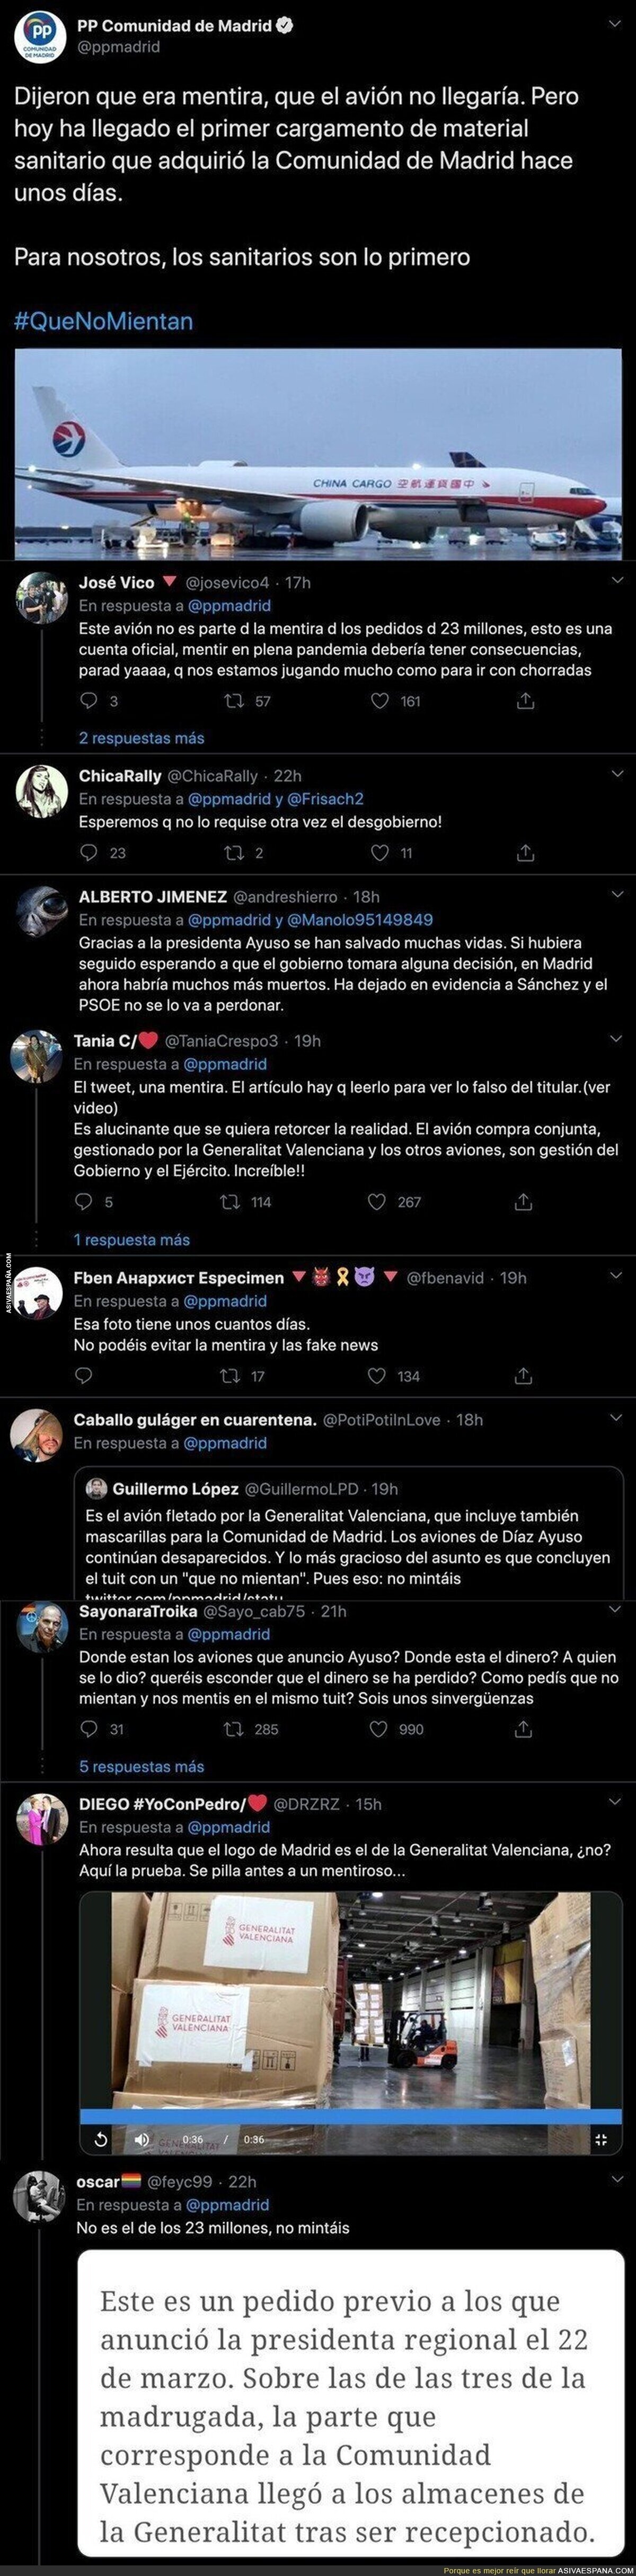 El PP anuncia -al fin- la aparición del avión con ayuda sanitaria para Madrid y los tuiteros les descubre la gran mentira